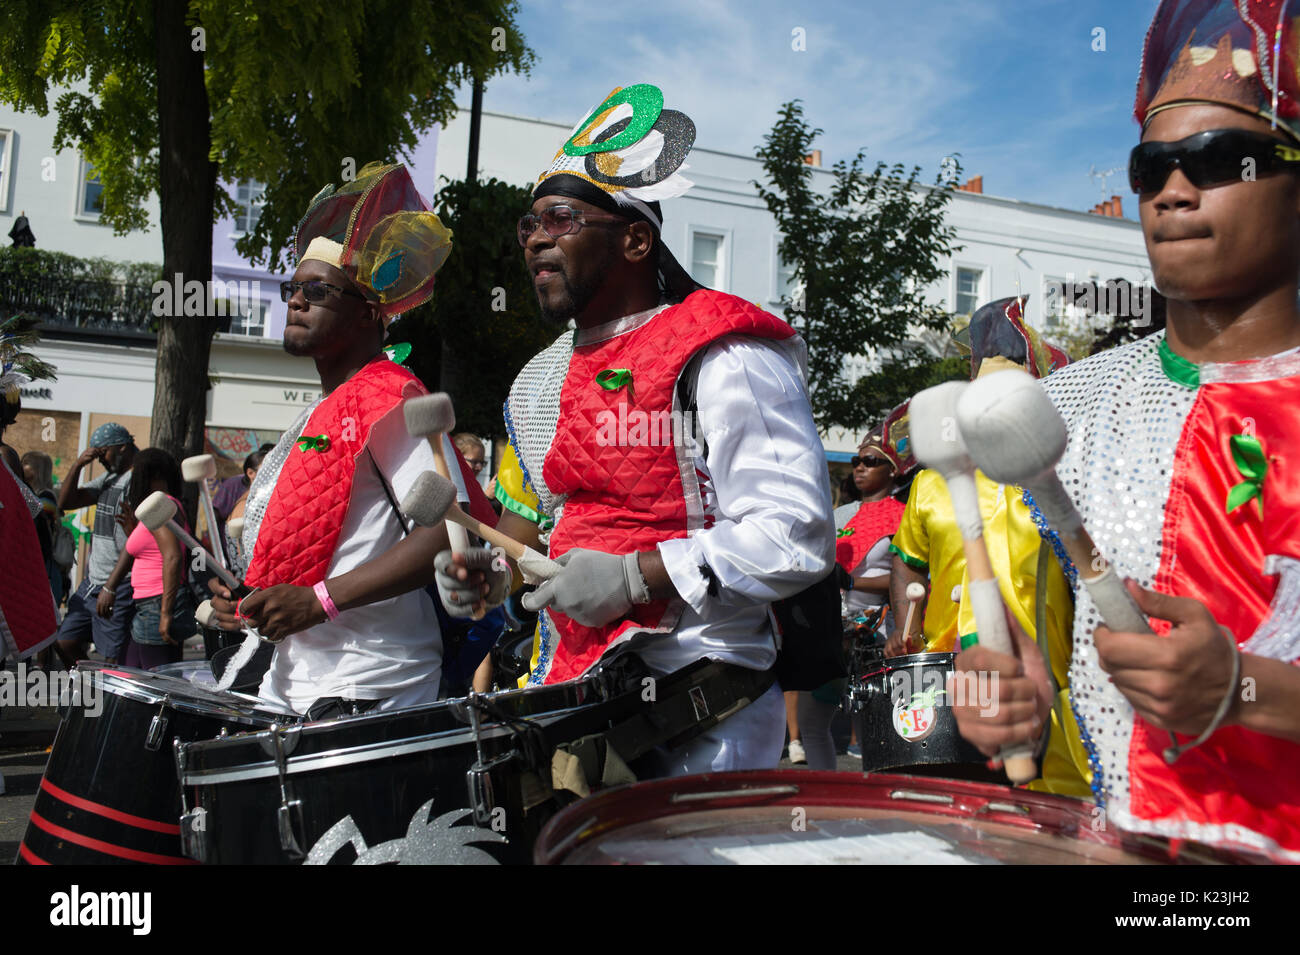 London, Großbritannien. 28 Aug, 2017. Der Notting Hill Carnival 2017 Parade durch die Straßen. Der Karneval lockte große Menschenmengen, die farbenfrohen Kostüme zu sehen und die Musik zu hören, wie sie durch die Straßen von Notting Hill, London vorgeführt. Andrew Steven Graham/Alamy leben Nachrichten Stockfoto